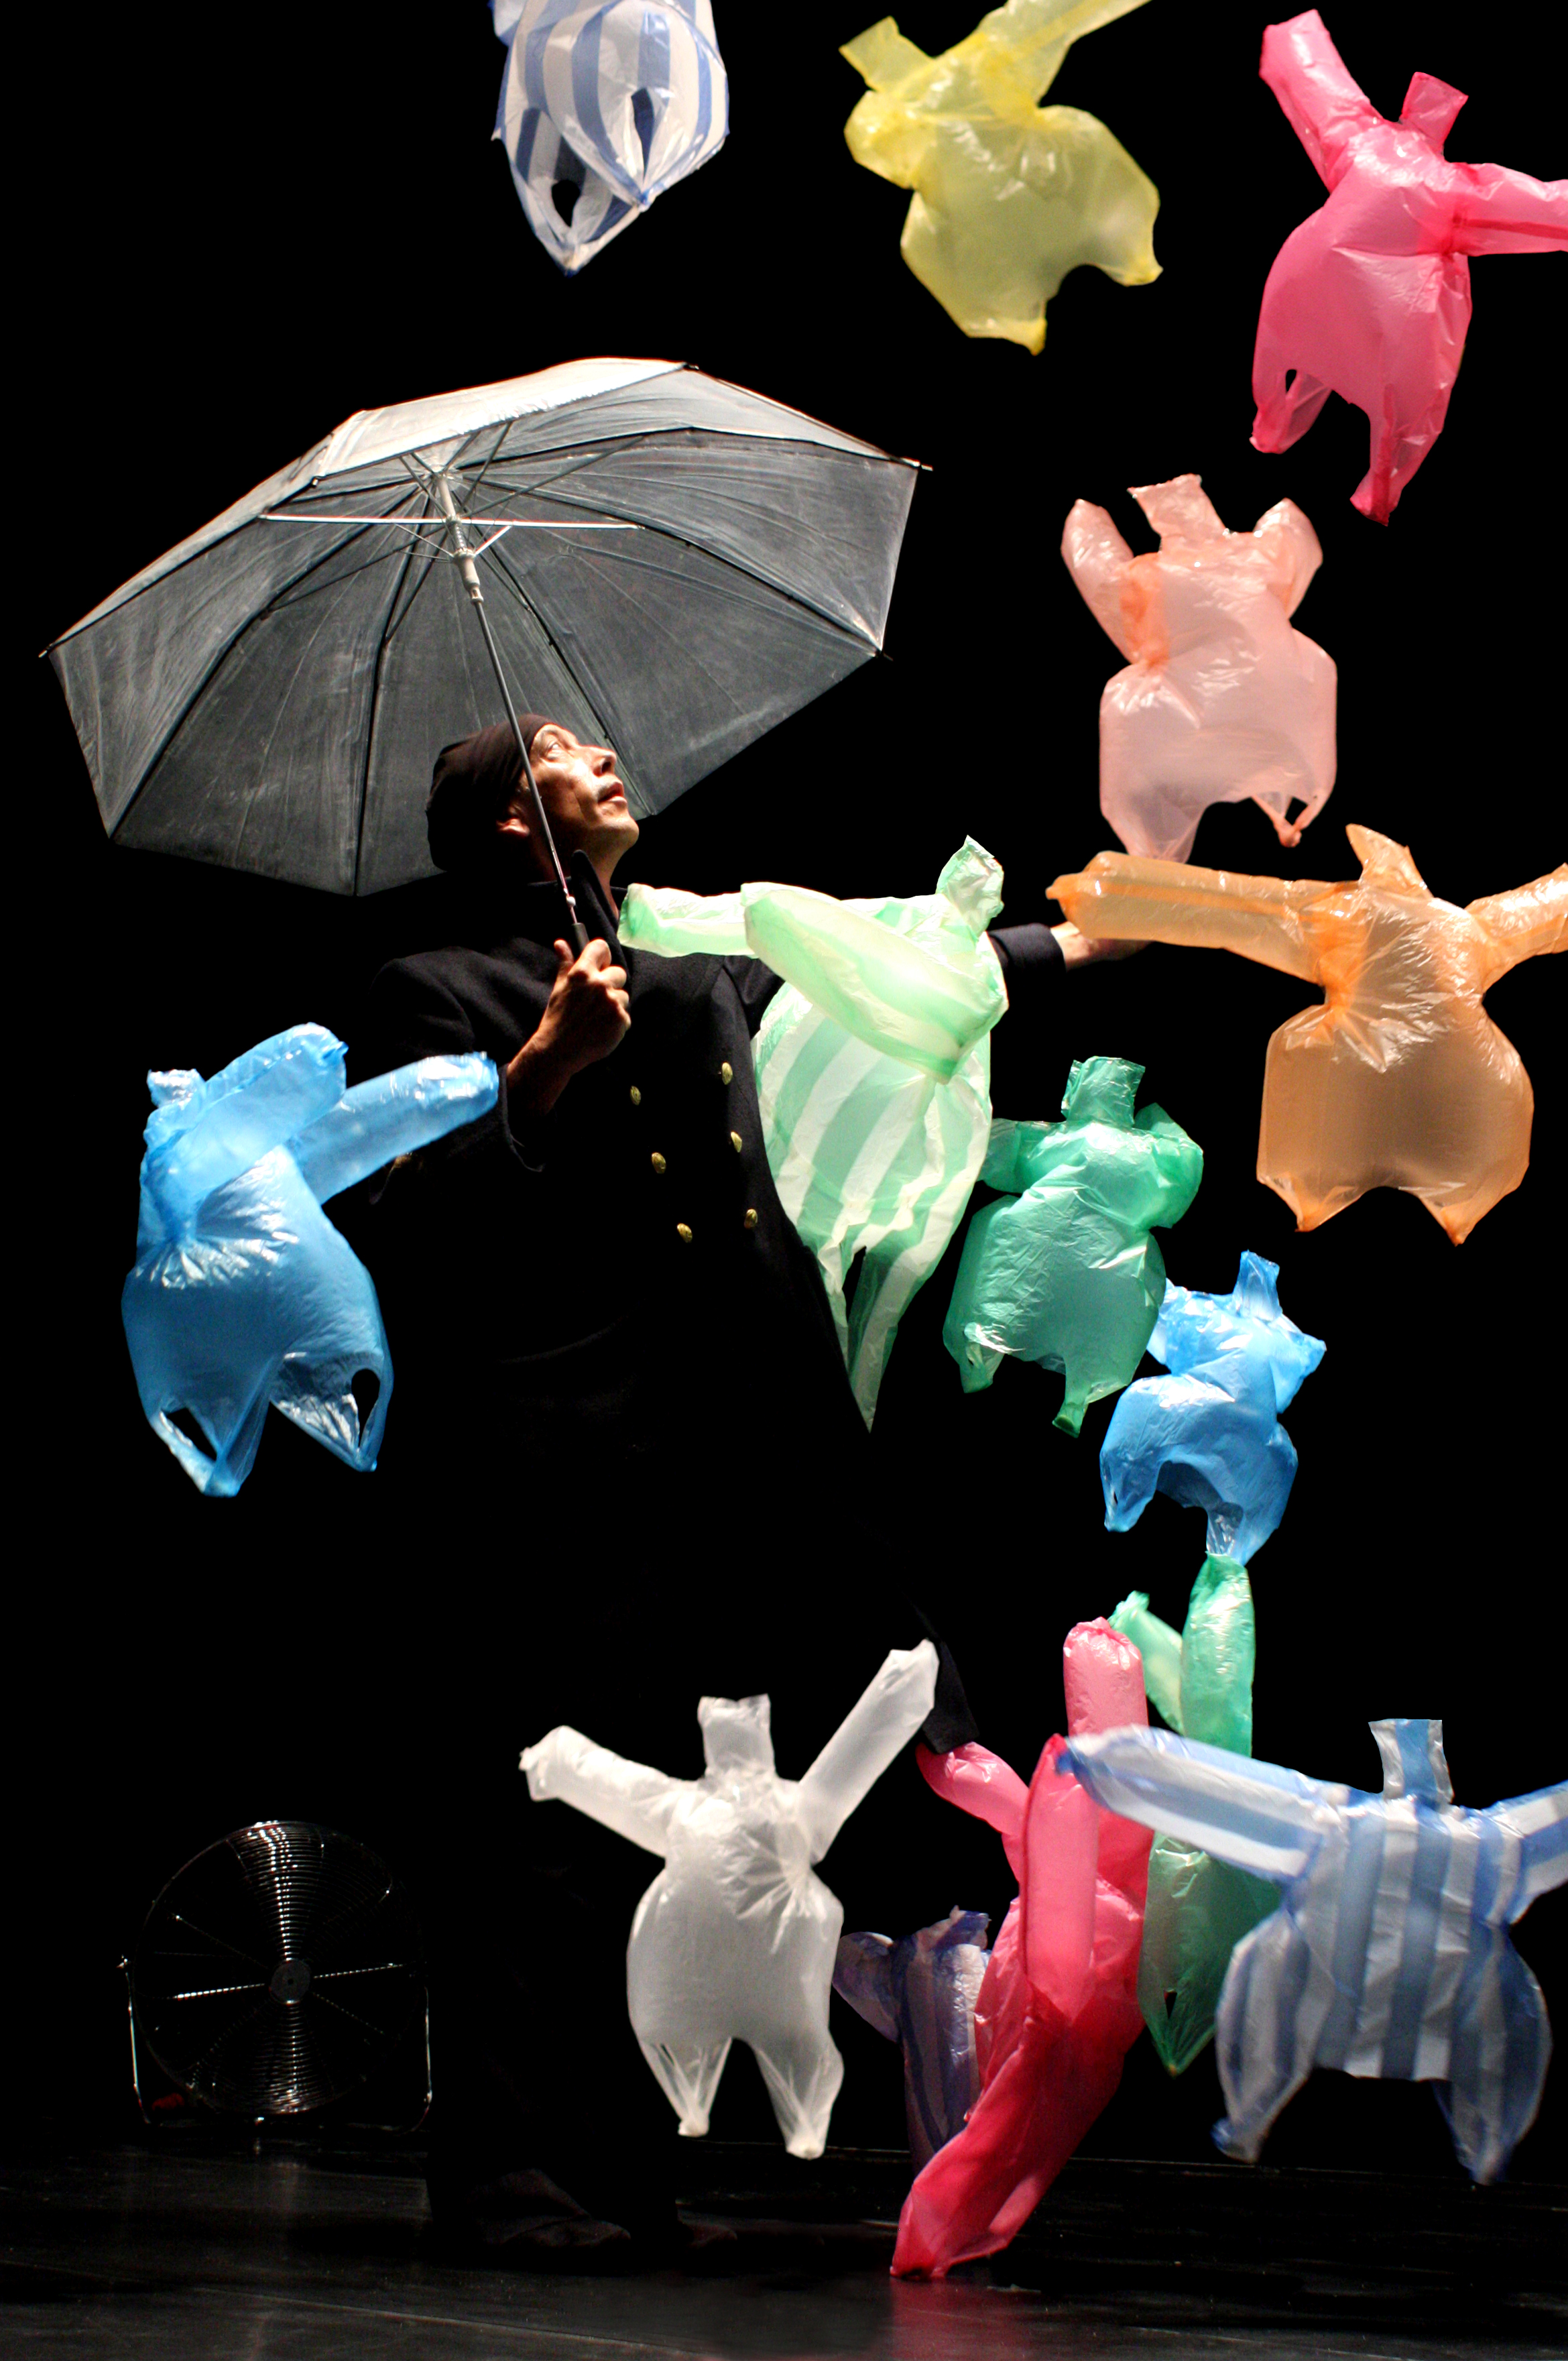 Eine Person mit Regenschirm, umgeben von fliegenden Plastikfiguren